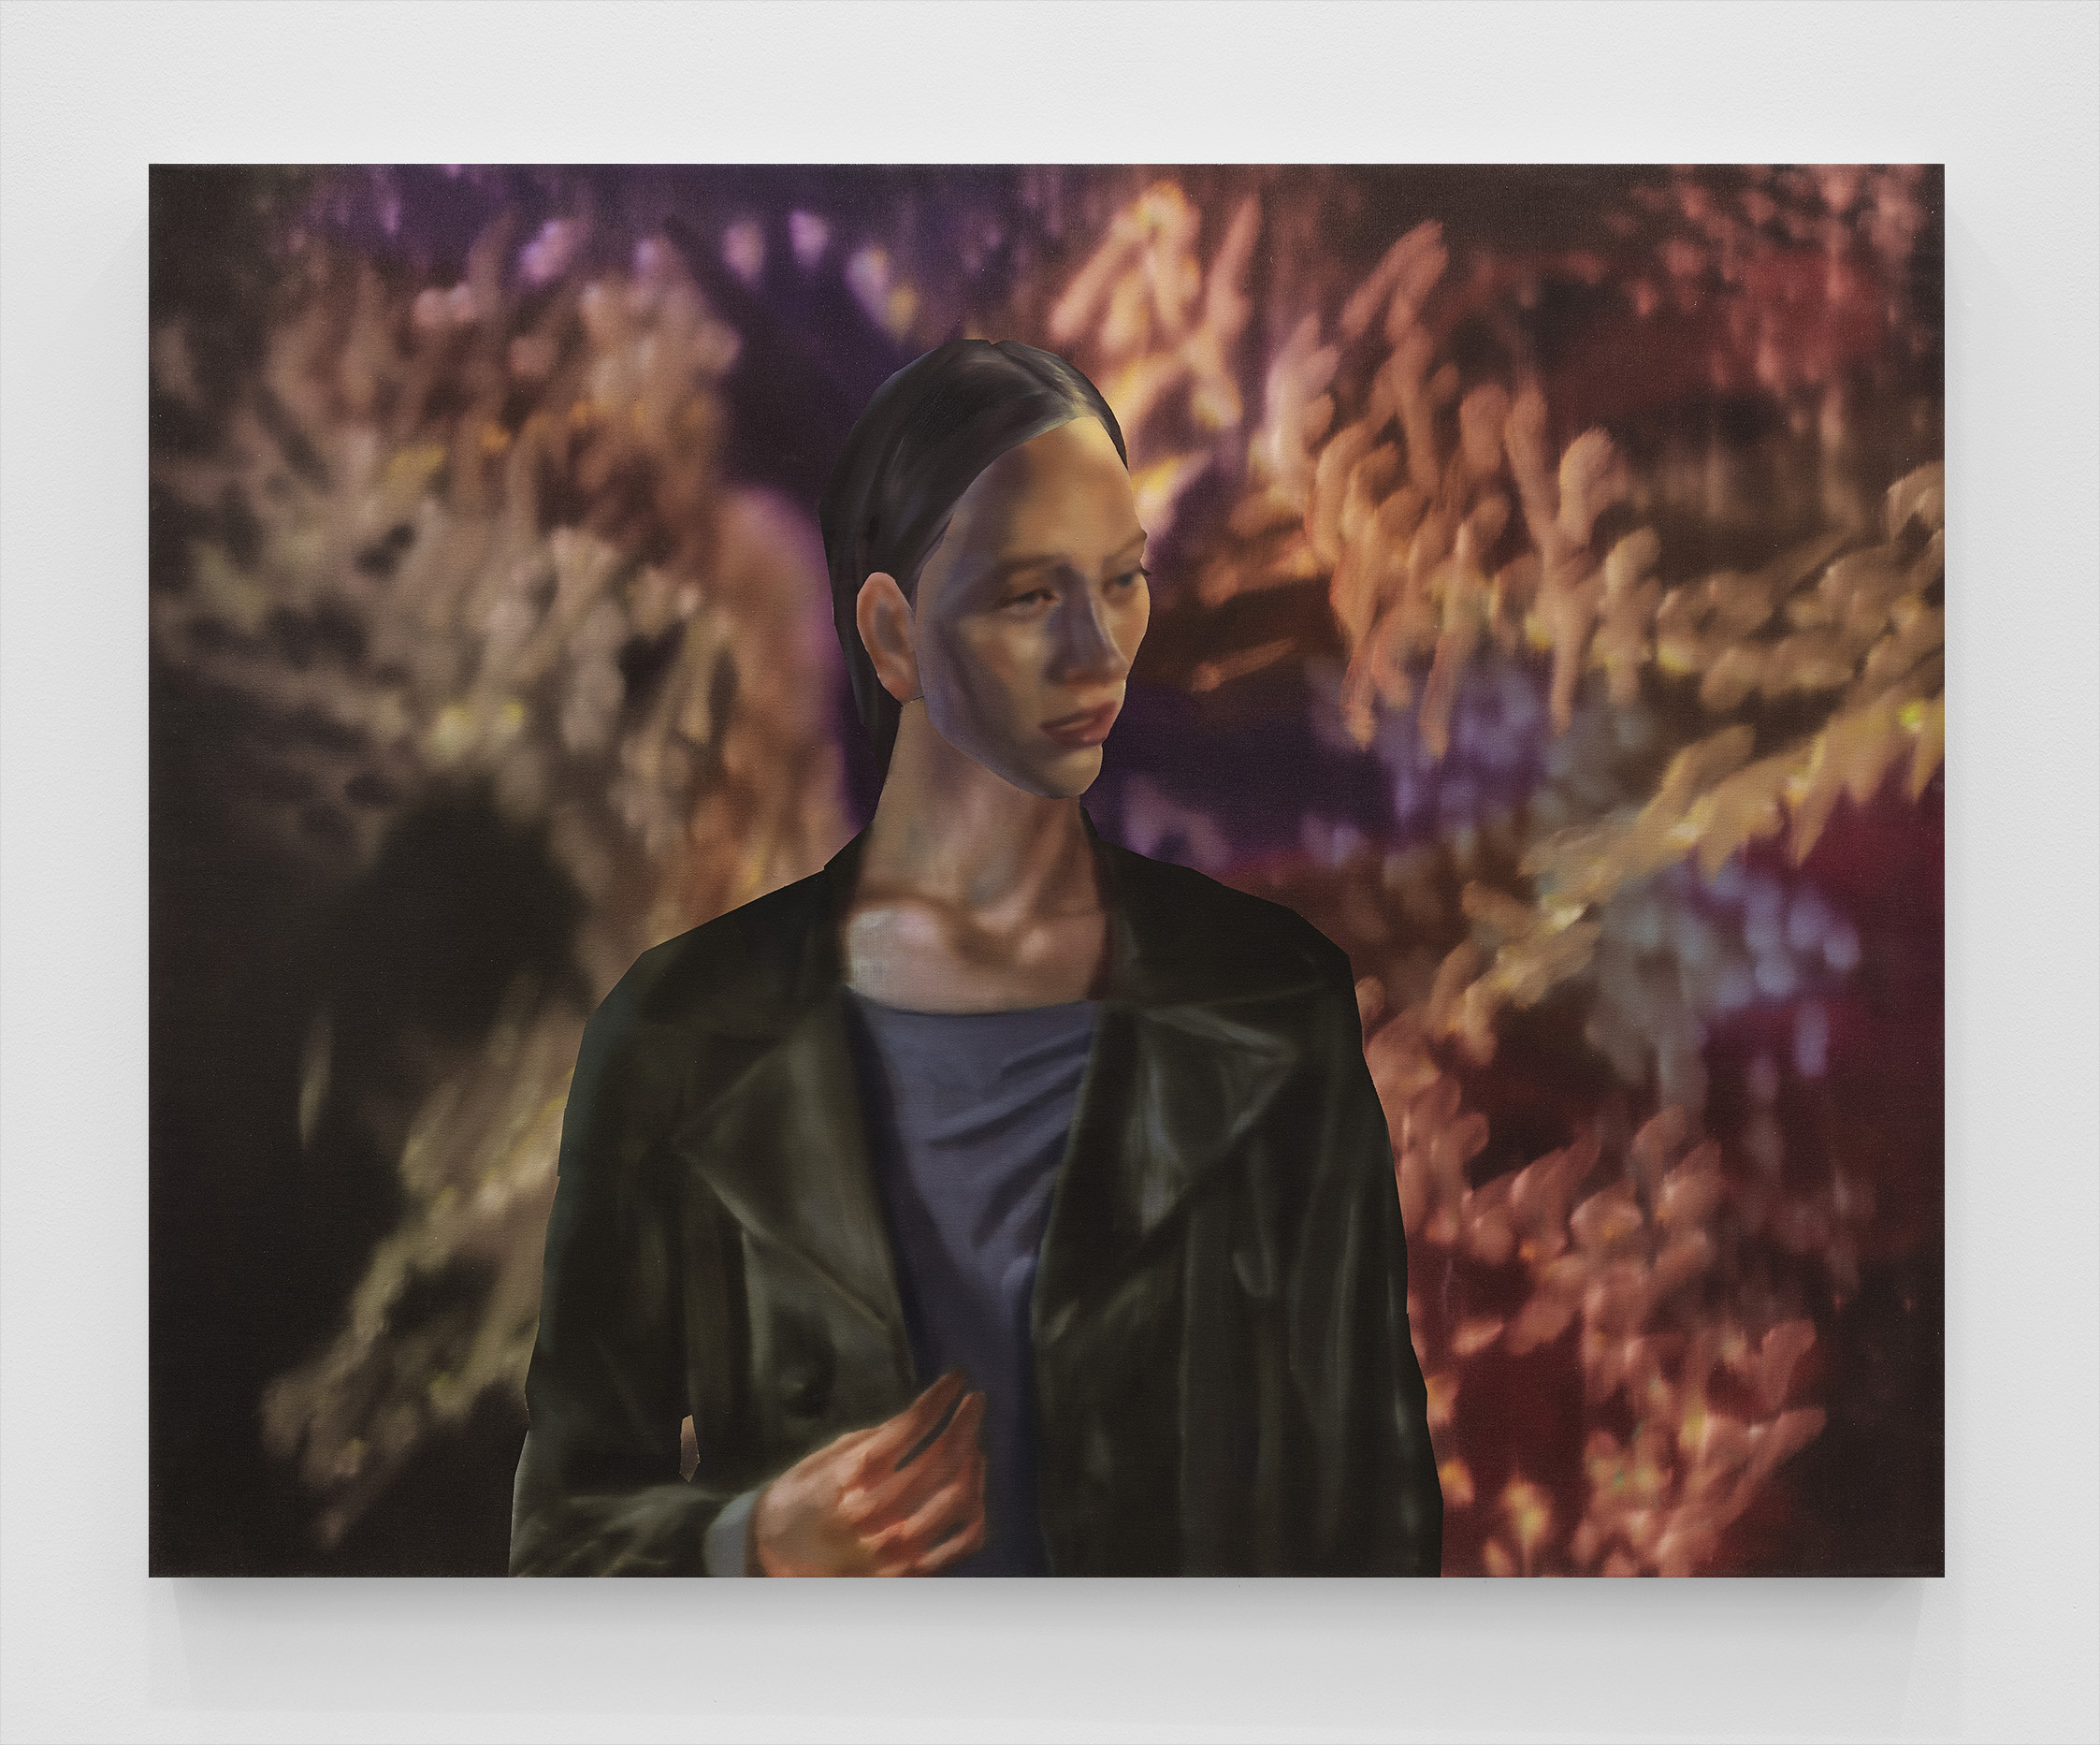 Rute Merk, Julia, 2020, oil on canvas, 104 x 132 cm, 41 x 52 in.